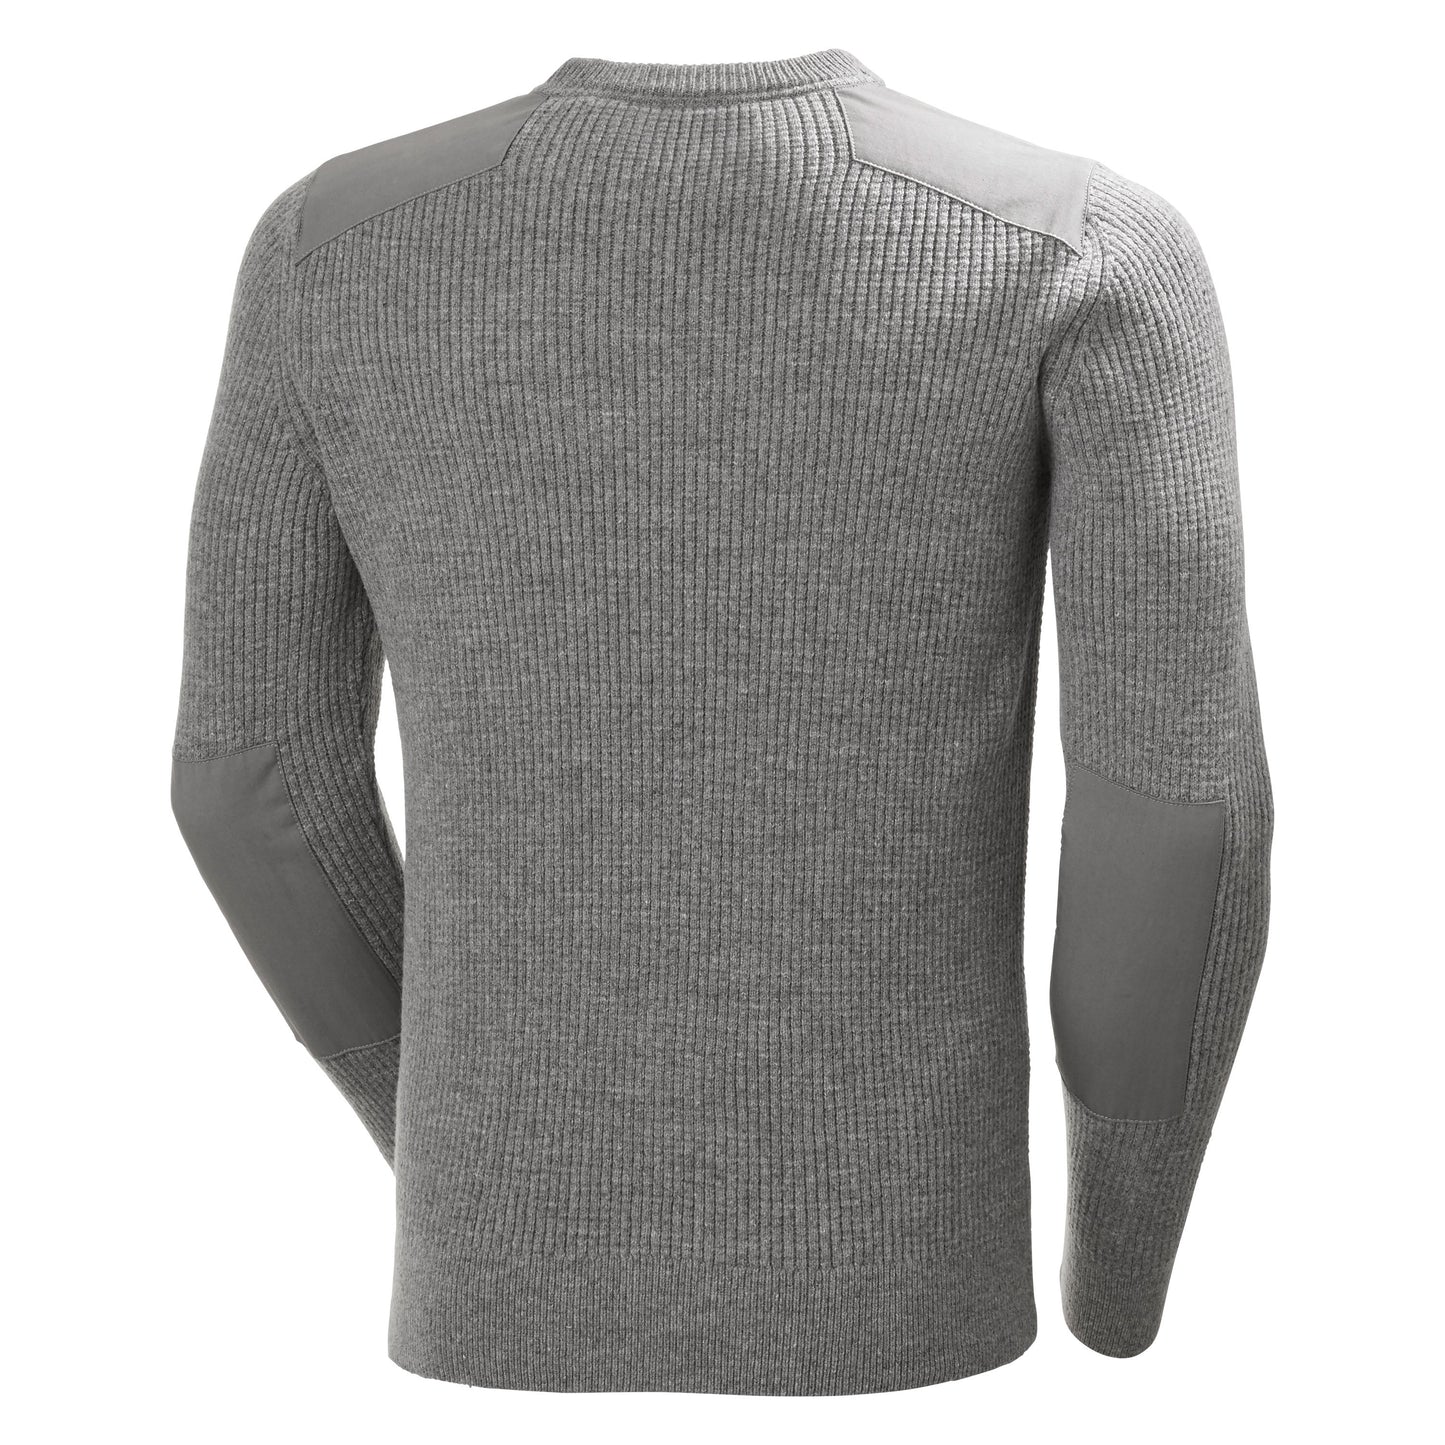 Helly Hansen Men's Arctic Shore Sweater Grey